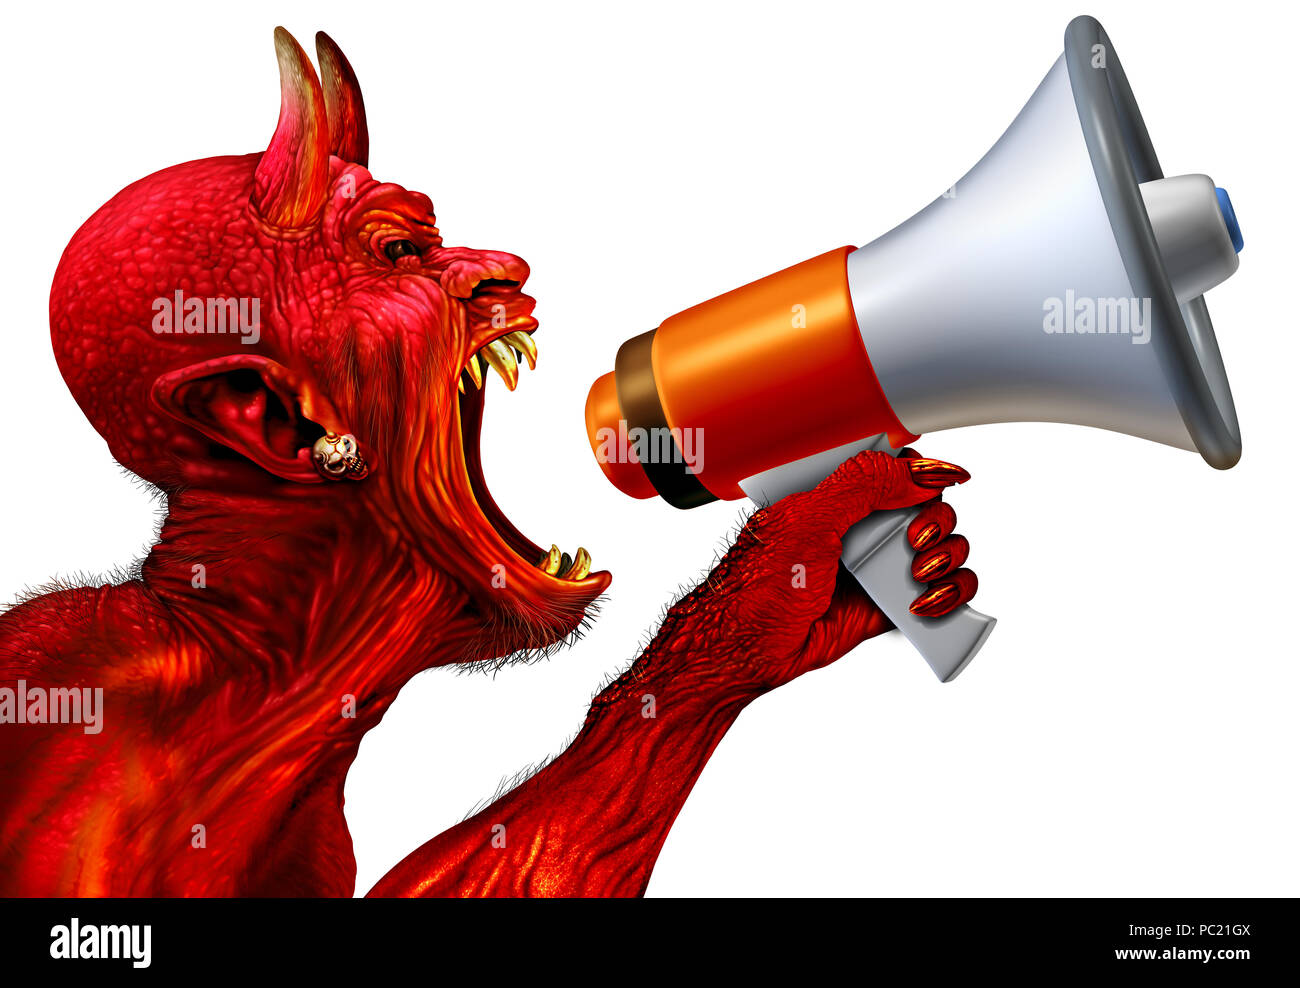 Daemon Ankündigung Konzept als red devil Monster hält ein Megaphon oder Megaphon zu News ankündigen oder Halloween Marketing und Promotion zu fördern. Stockfoto